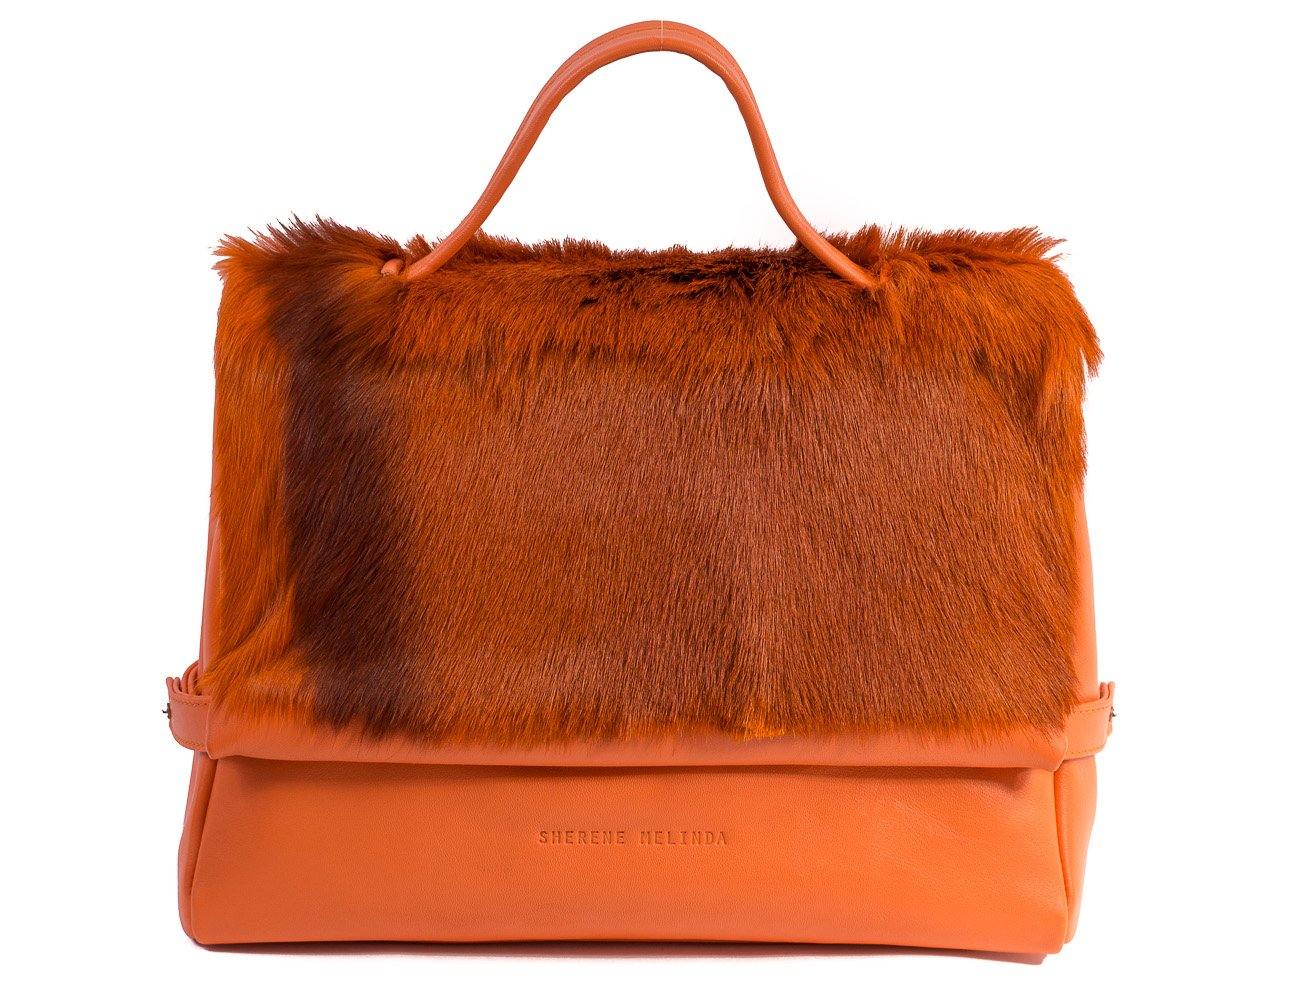 sherene melinda springbok hair-on-hide orange leather smith tote bag Stripe front